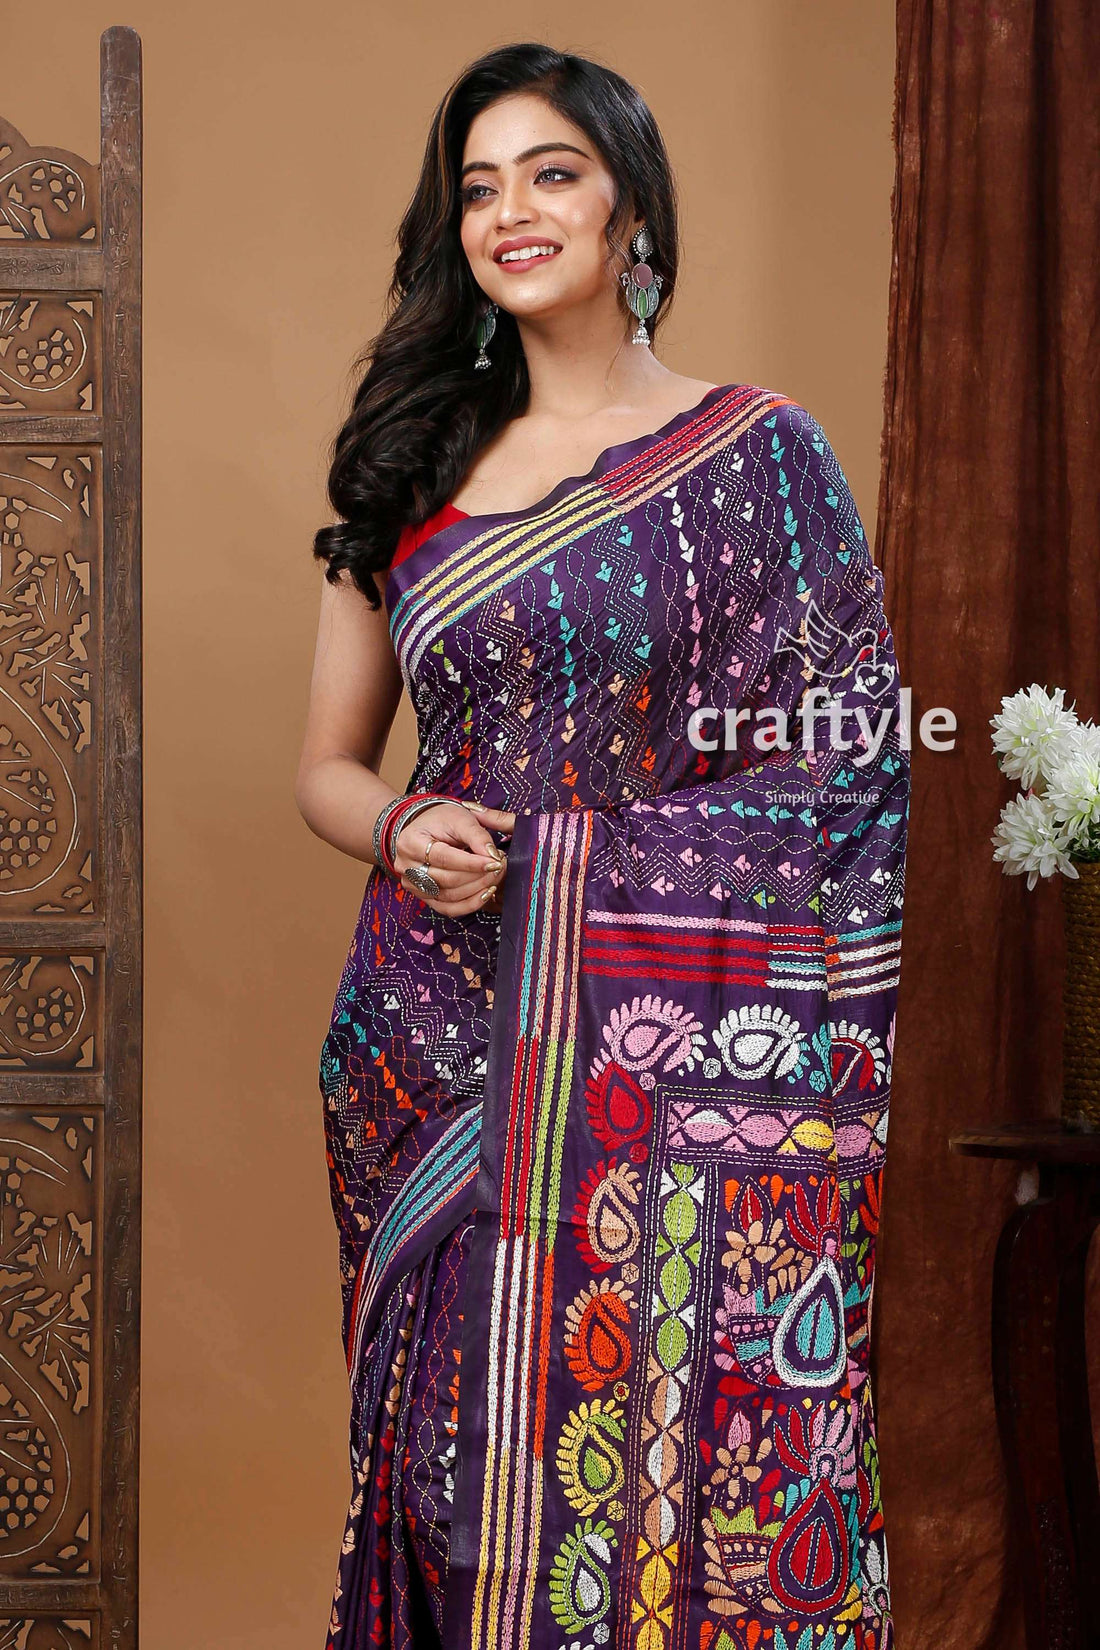 Handcrafted Silk Kantha Stitch Saree - Deep Violet Floral Design-Craftyle